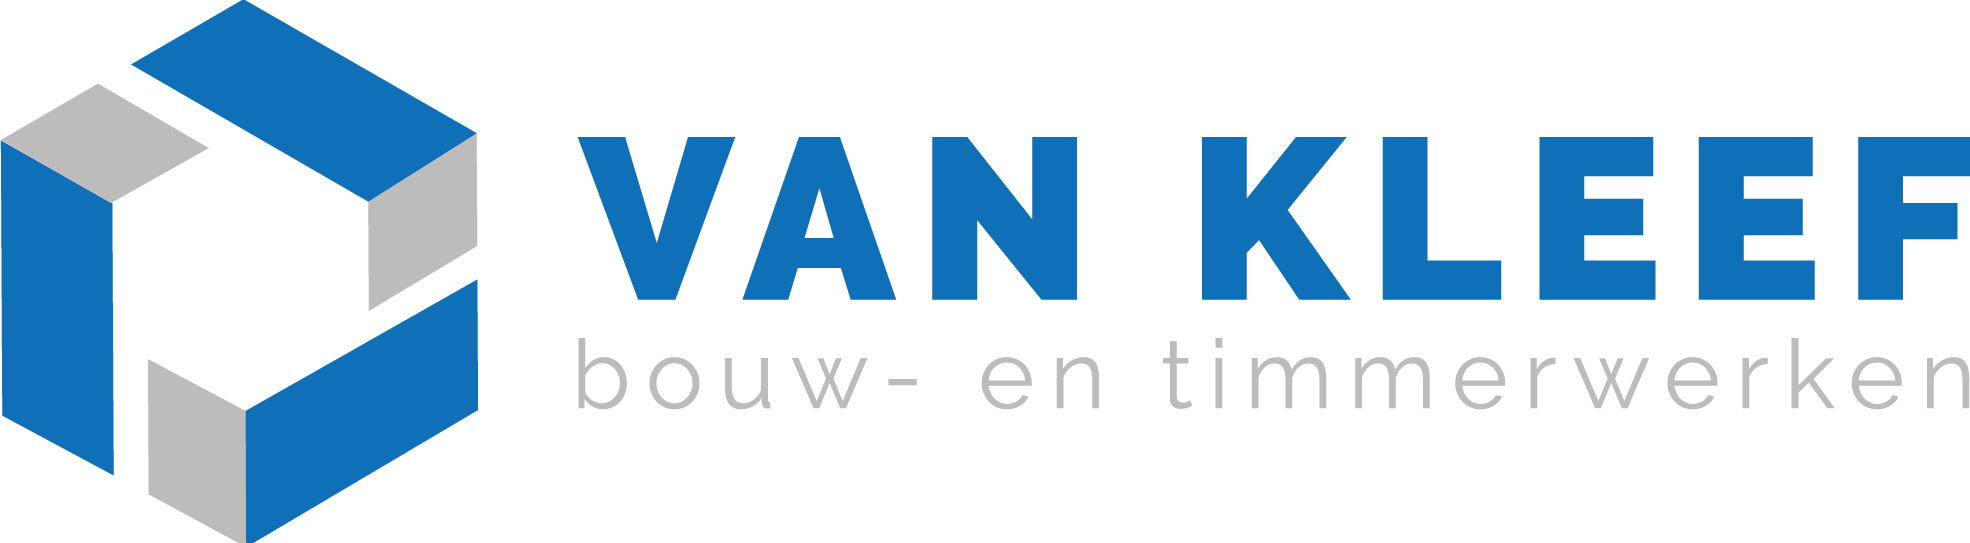 Van Kleef